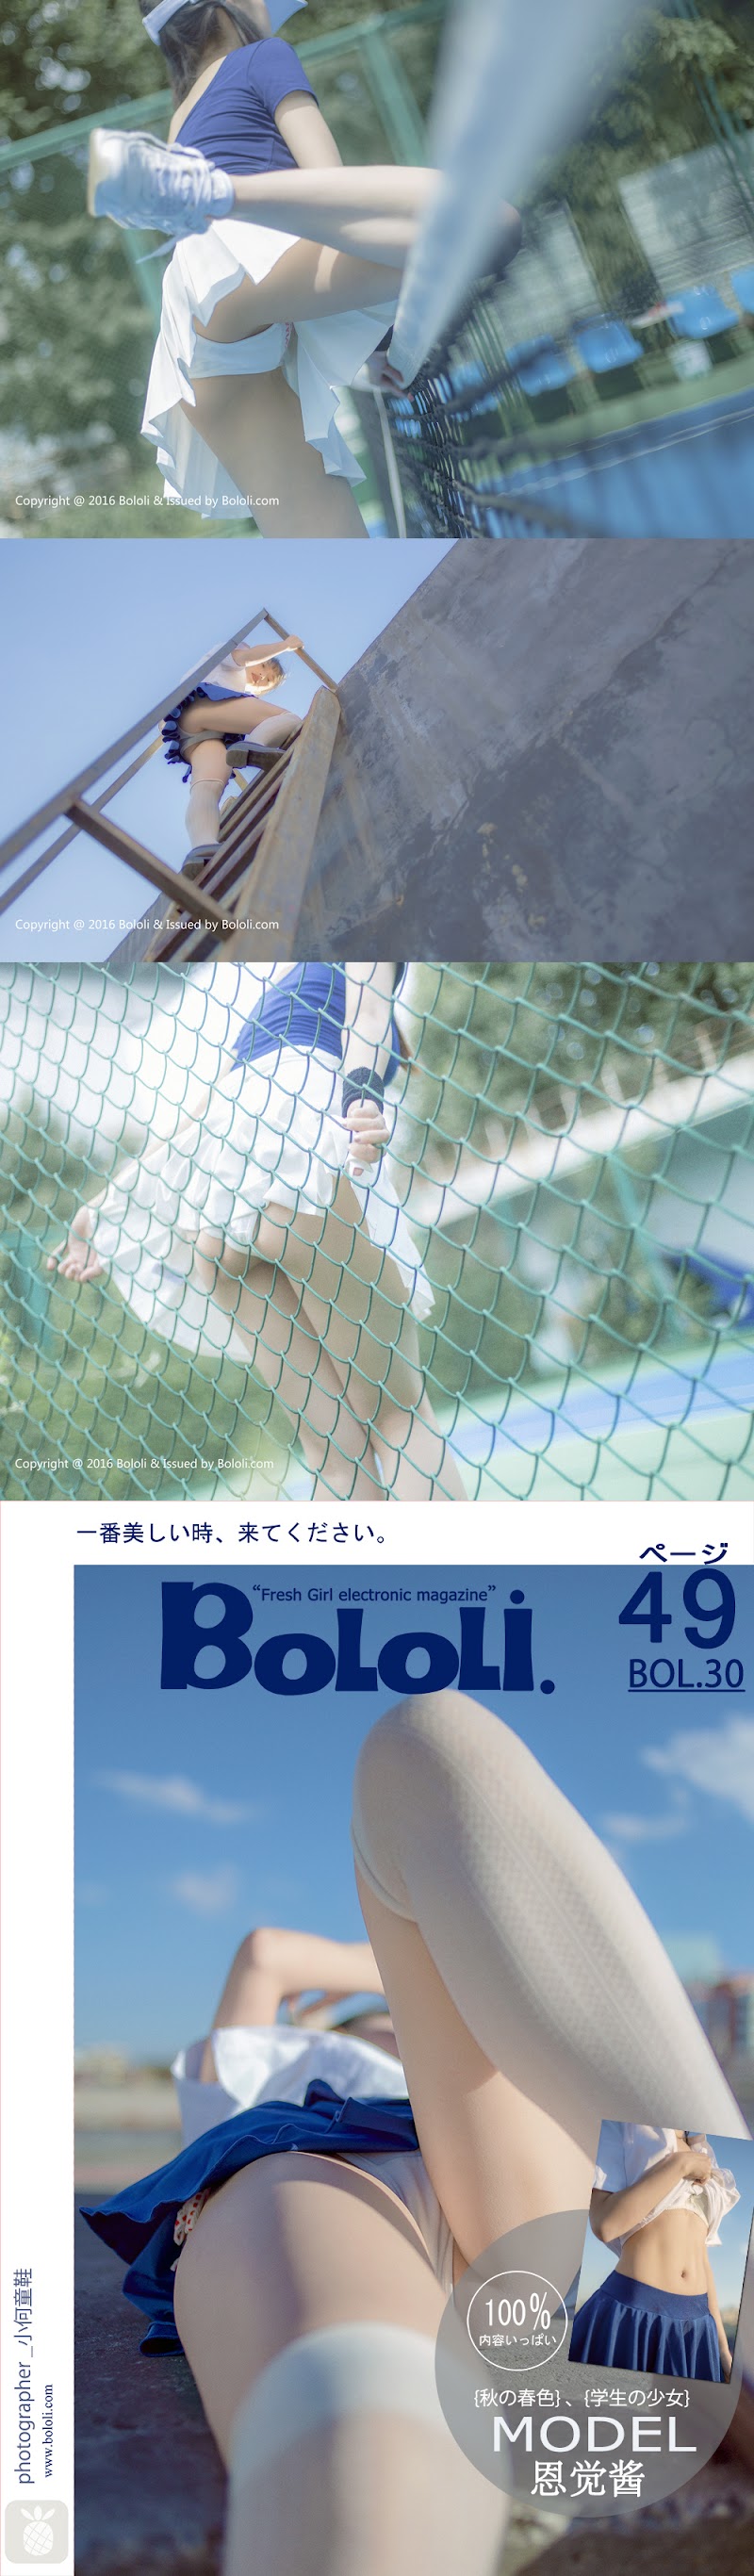 BoLoli_2017-03-13_Vol.030_.rar-jk- BoLoli 2017-03-13 Vol.030